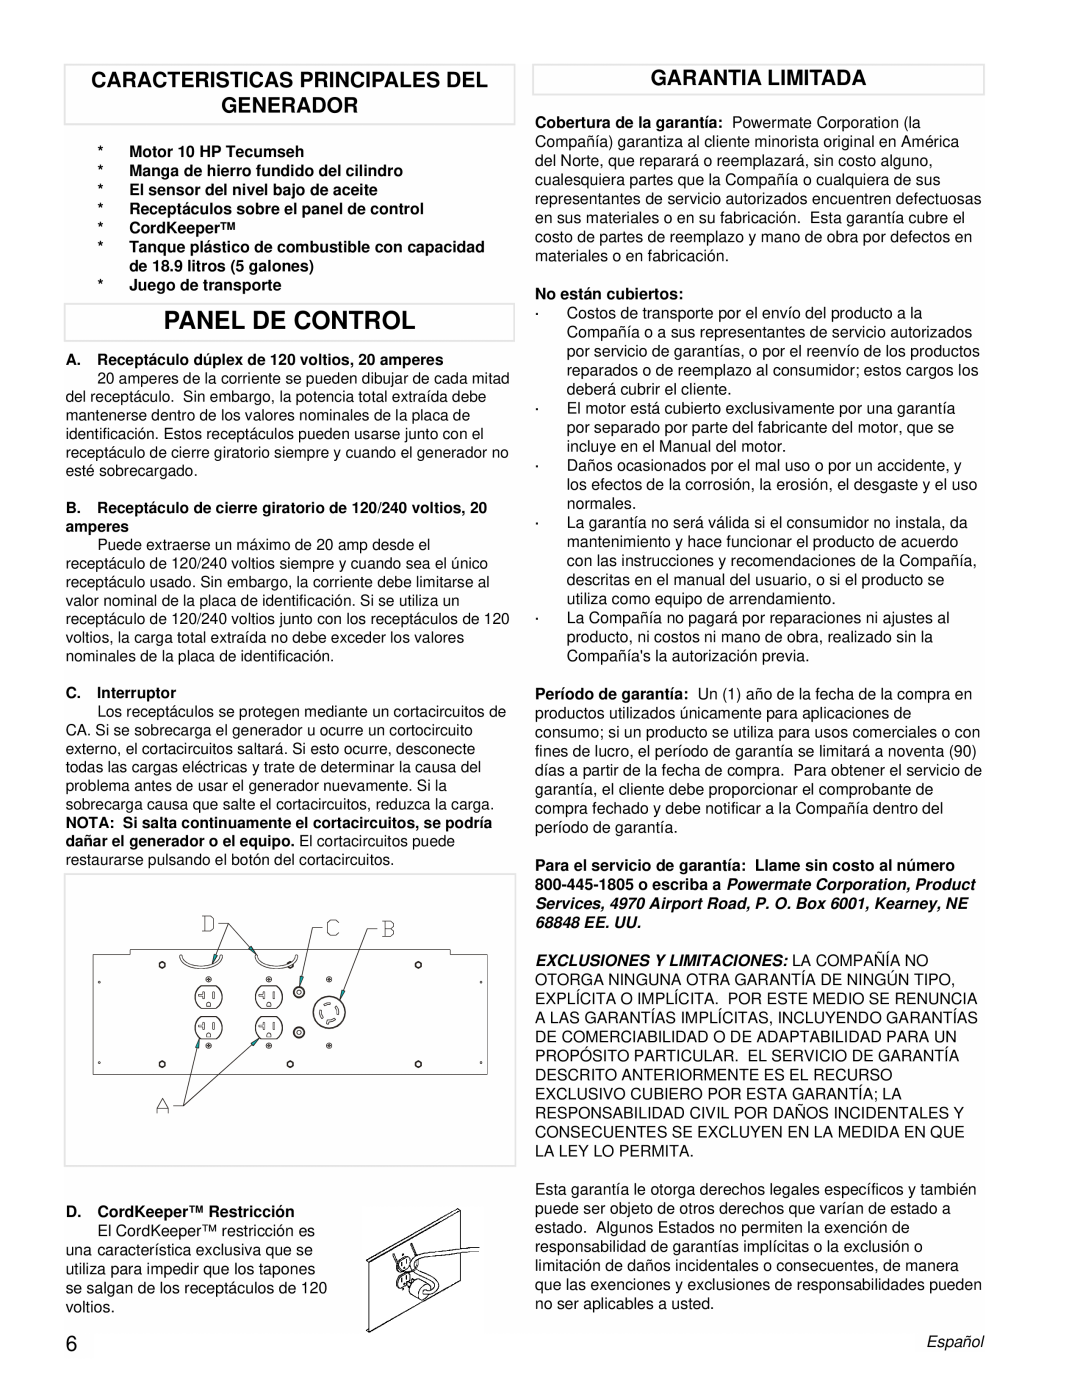 Powermate PM0525312.02 manual Panel De Control, Caracteristicas Principales Del Generador, Garantia Limitada 